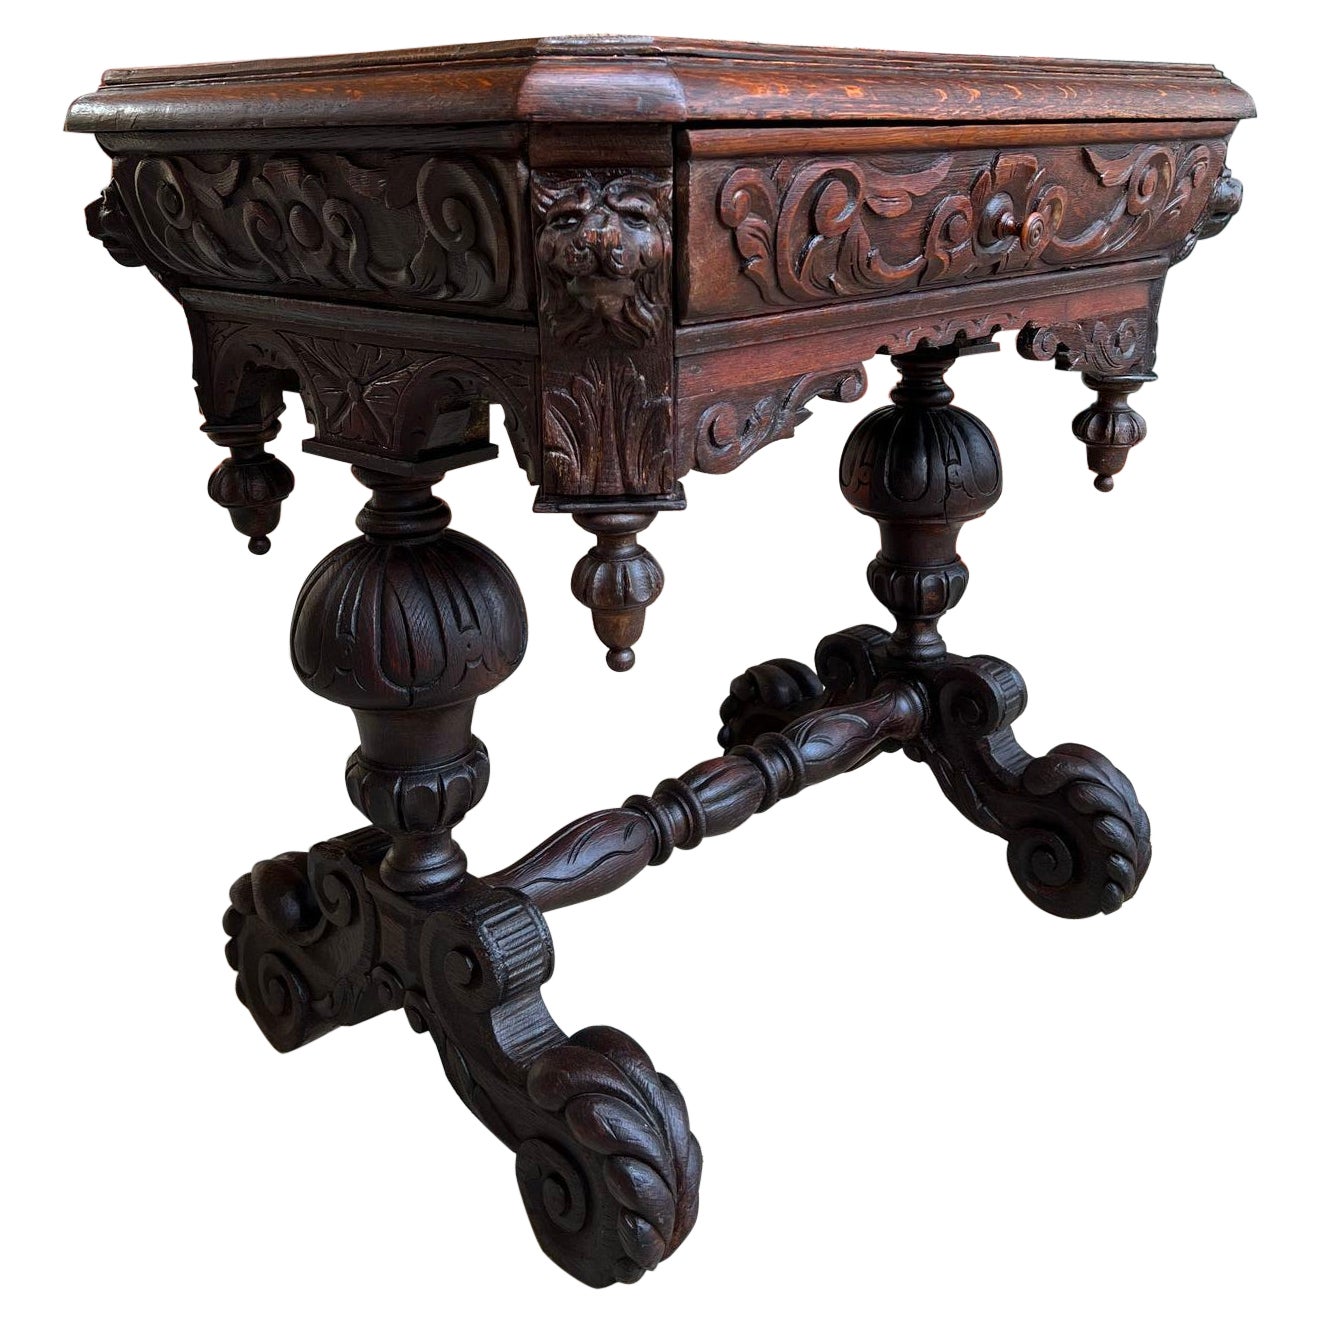 Petite table de canapé anglaise du 19ème siècle Bureau de bibliothèque en chêne sculpté Renaissance